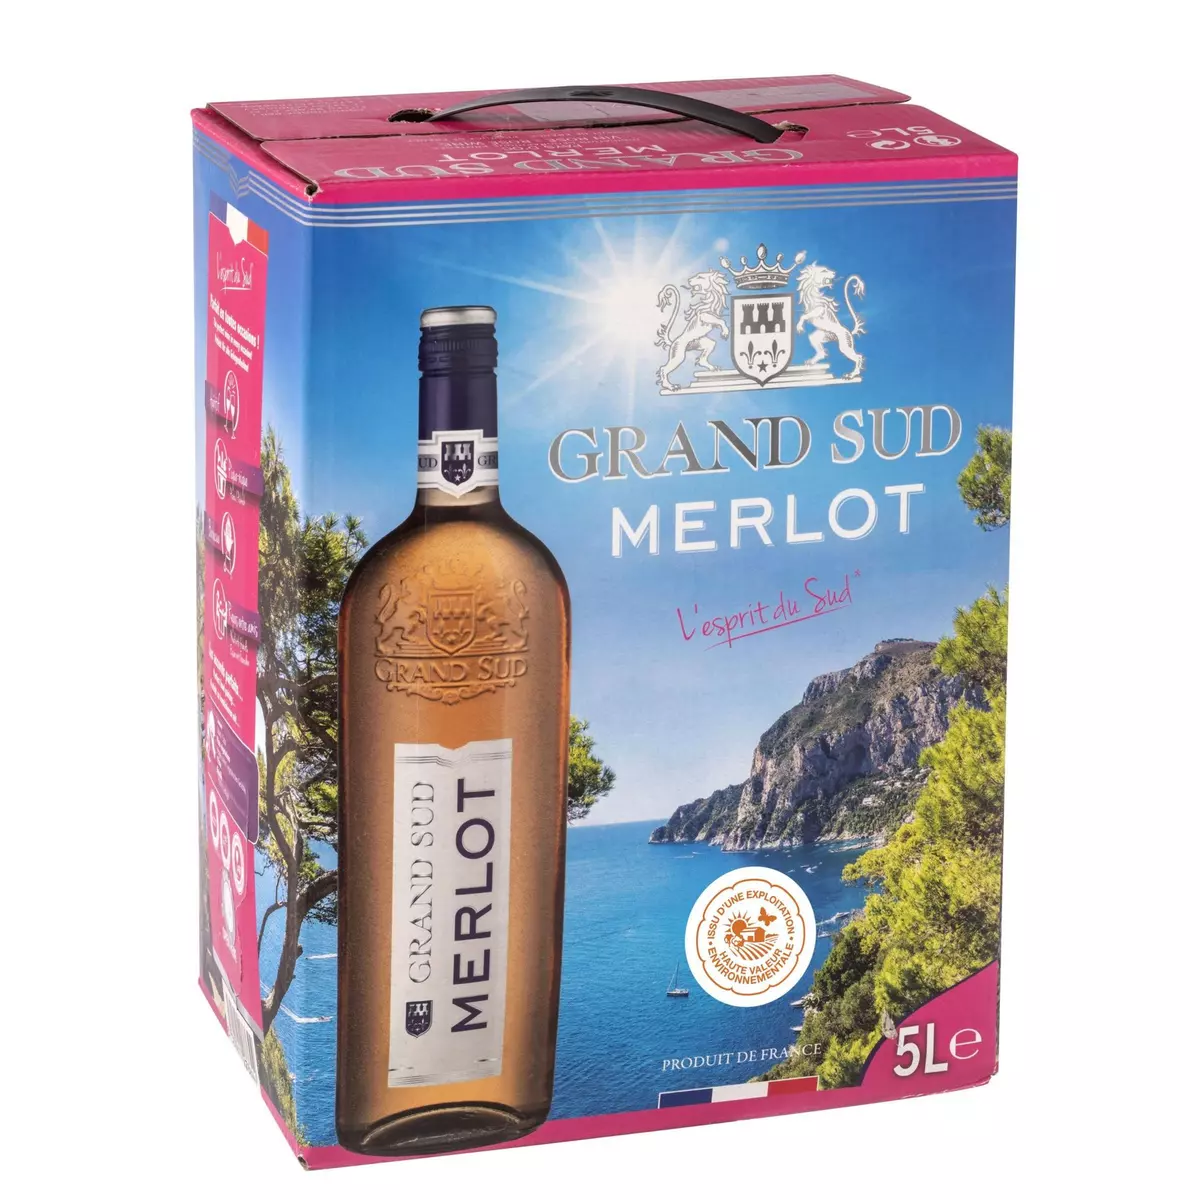 IGP Merlot Grand sud rosé bib 5l